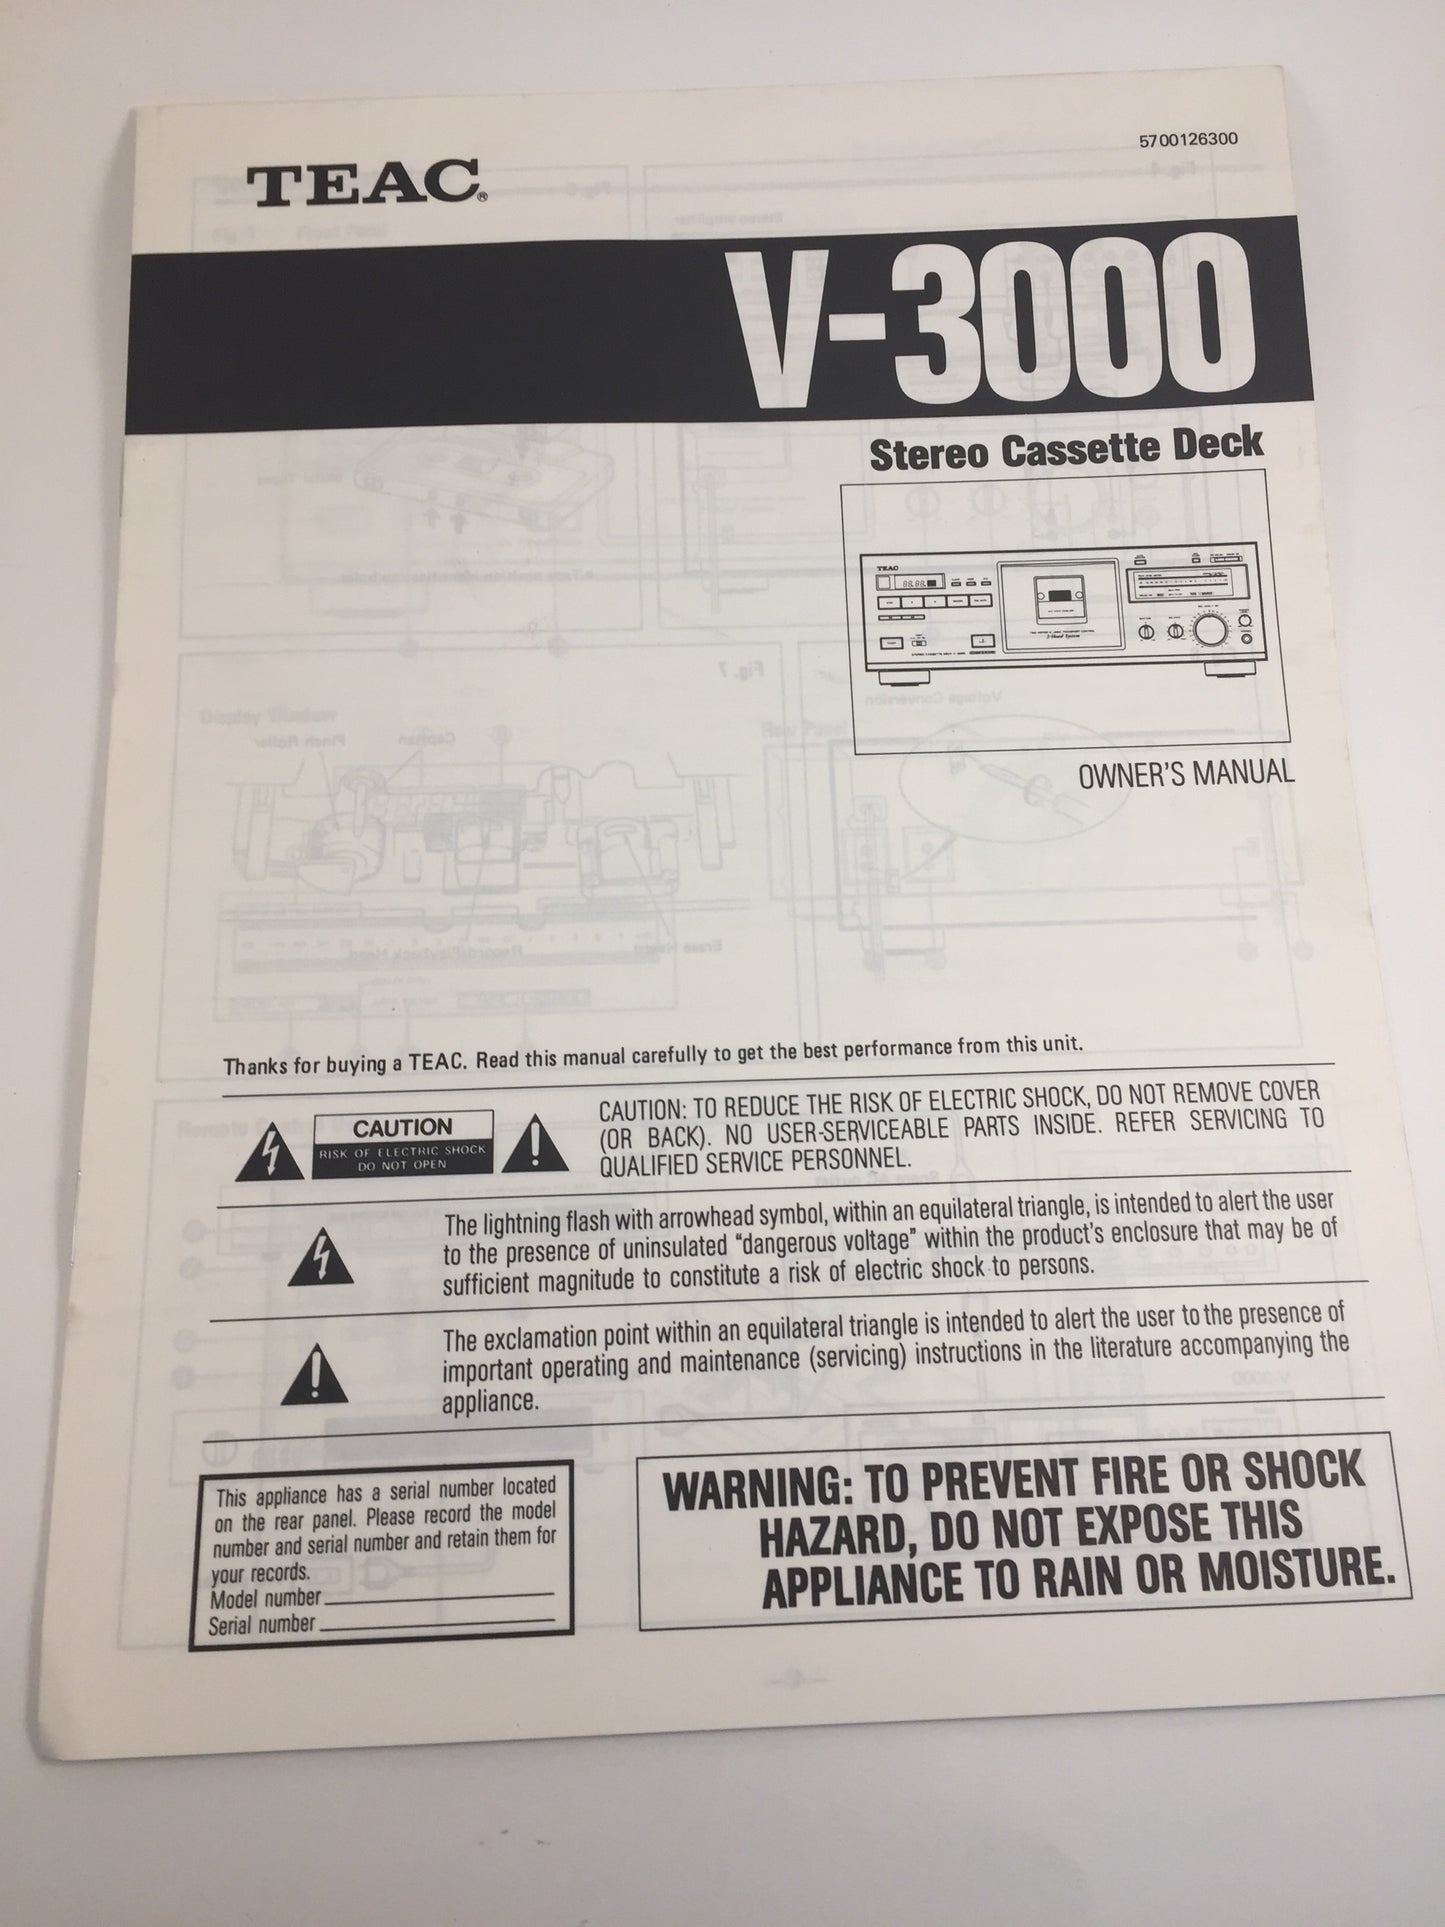 Teac V-3000 Stereo Cassette Deck Owner's Manual